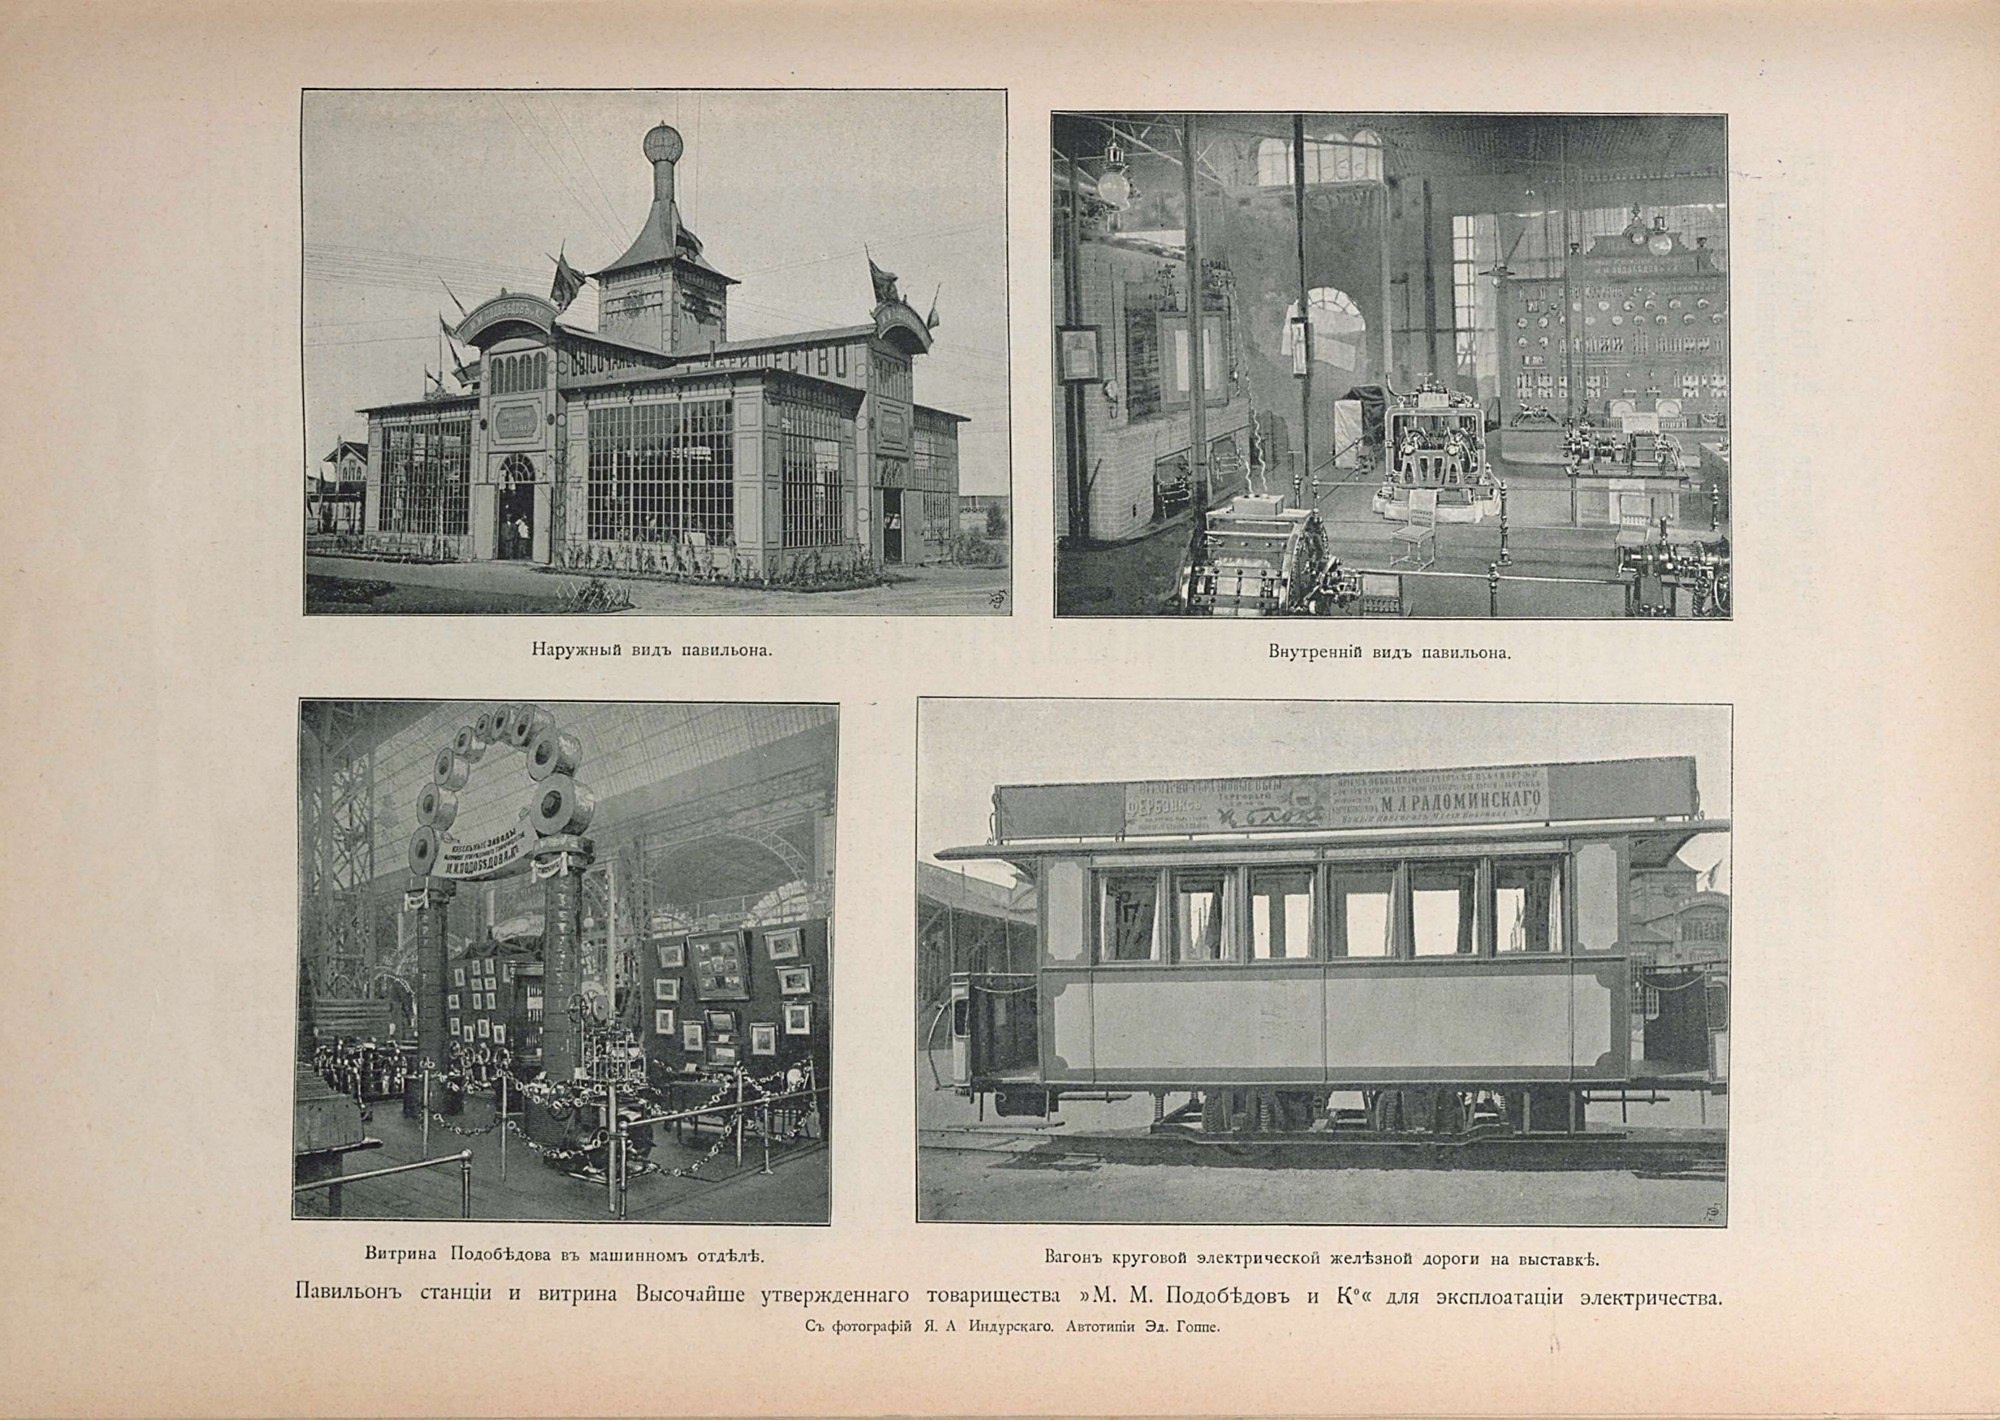 Нижегородская выставка 1896 года стала самой грандиозной в истории России